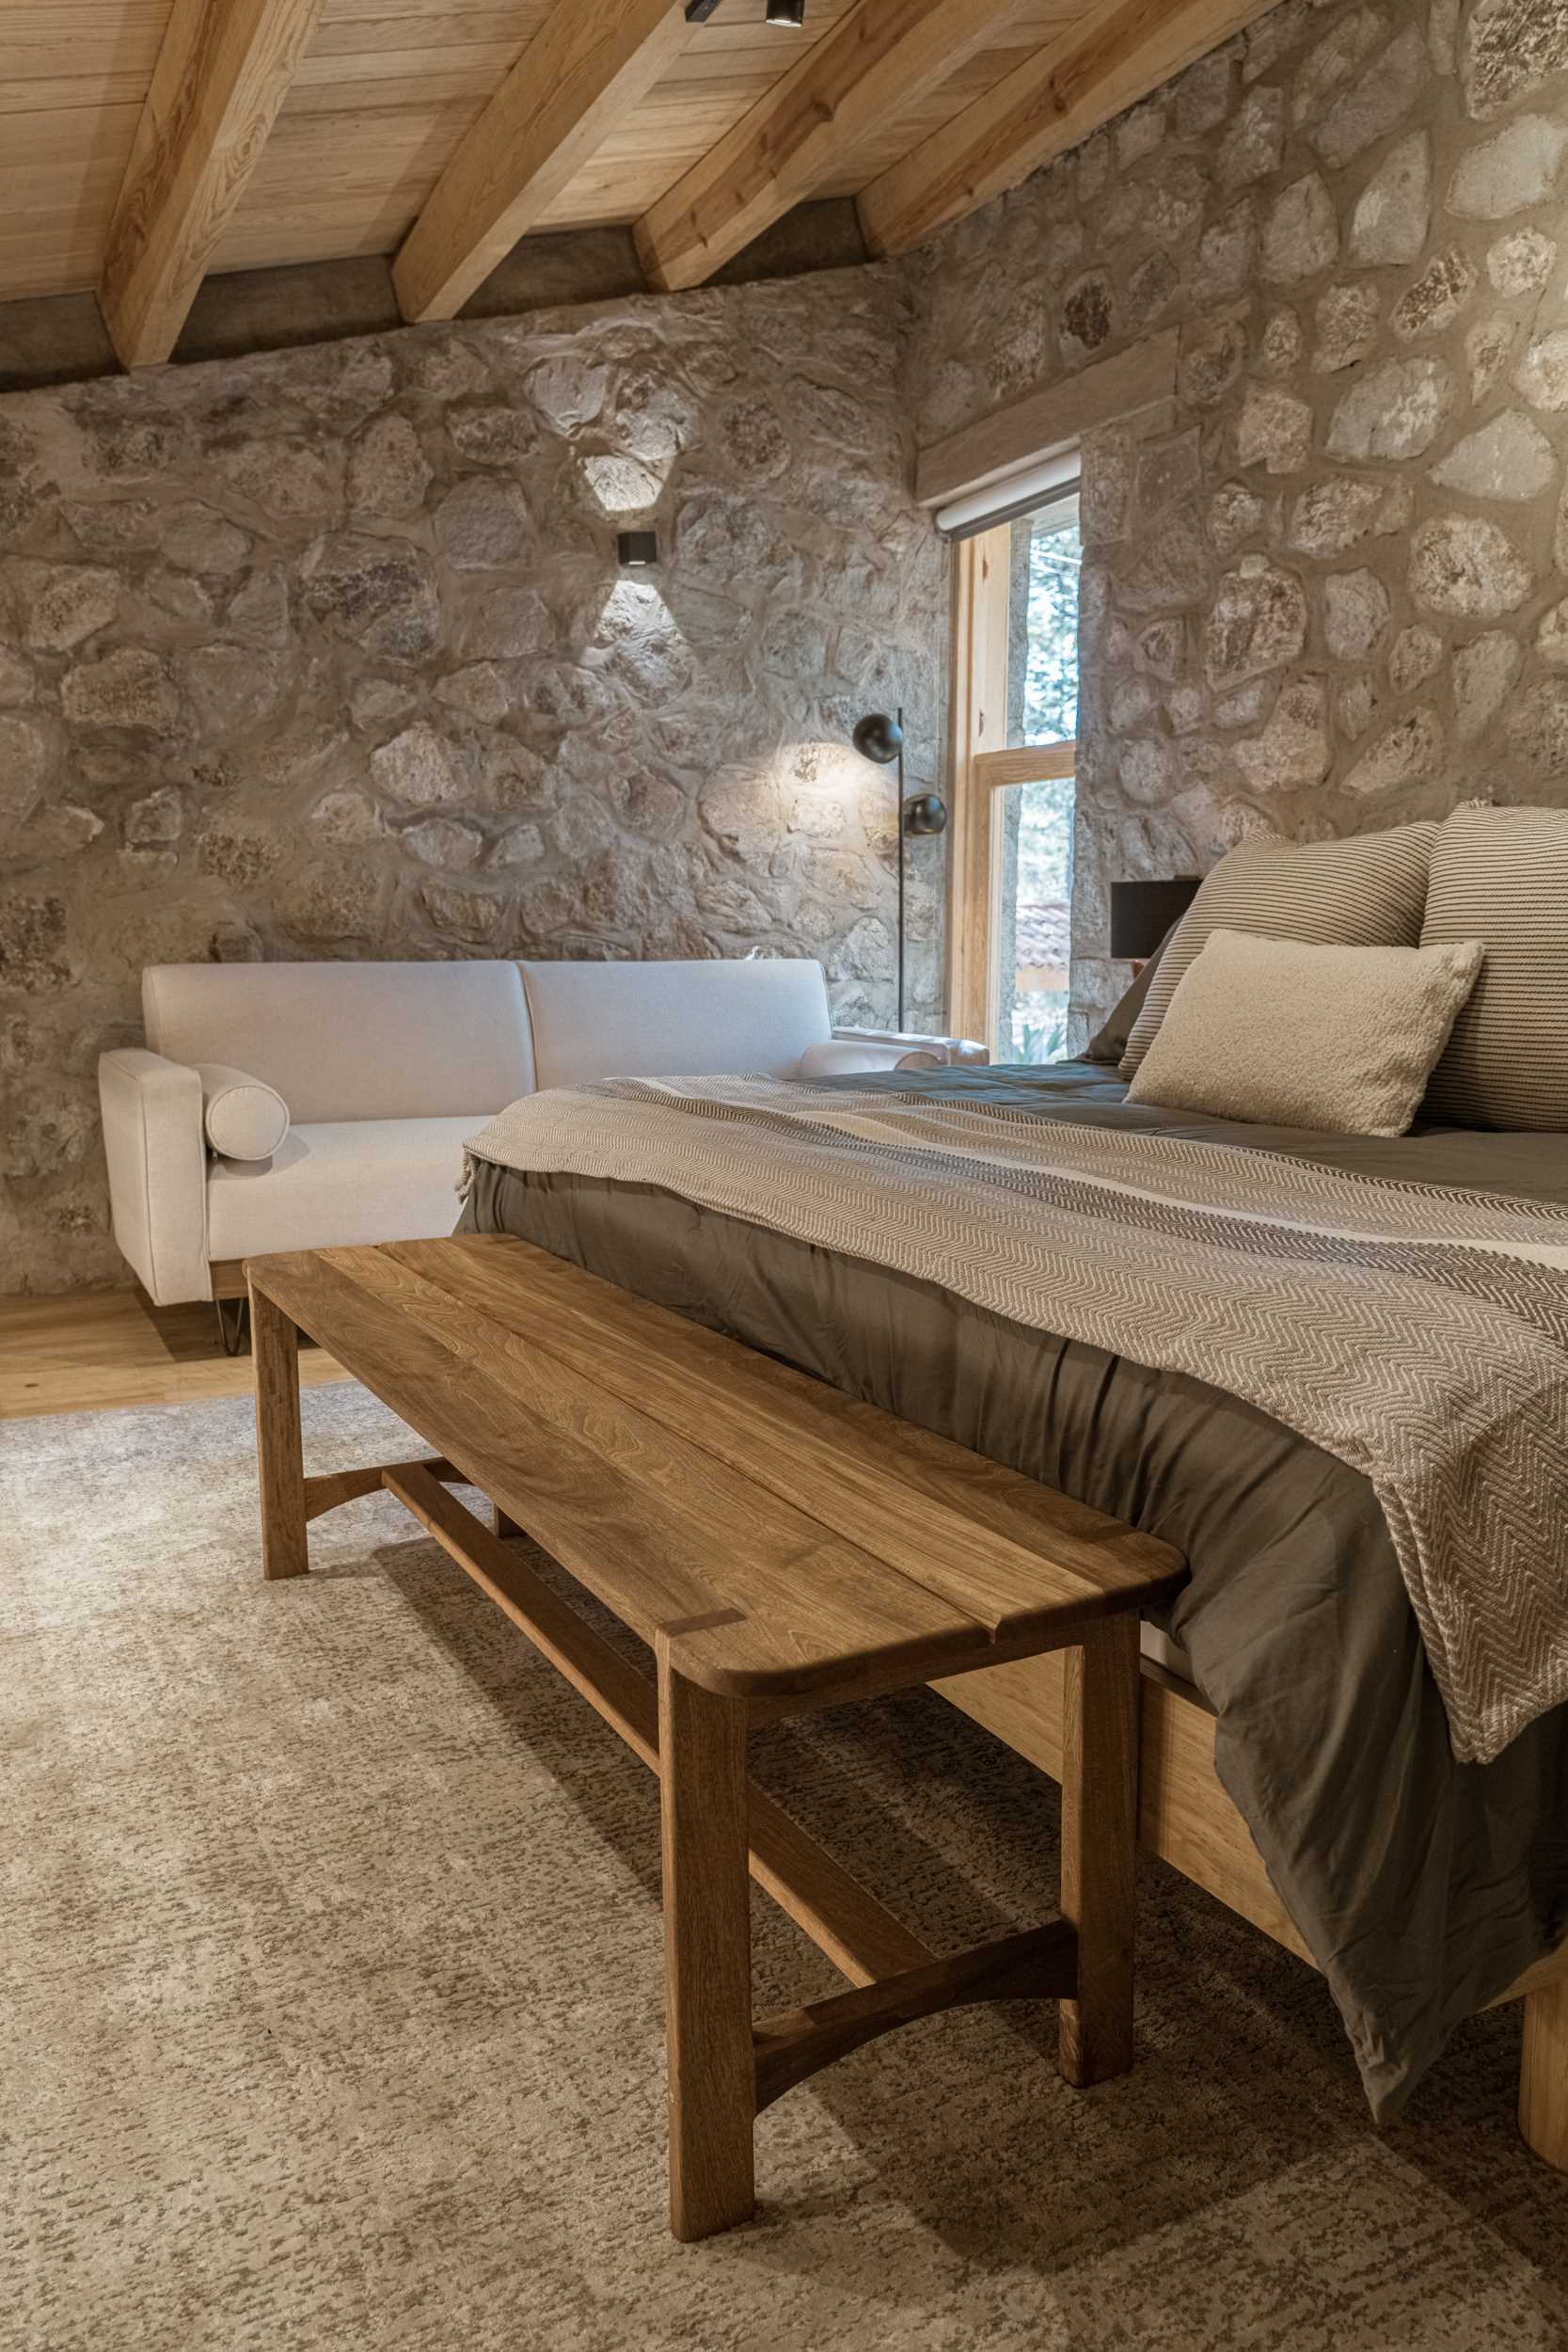 یک اتاق خواب مدرن با دیوارهای سنگی، کف چوبی، و مبلمان دنج.